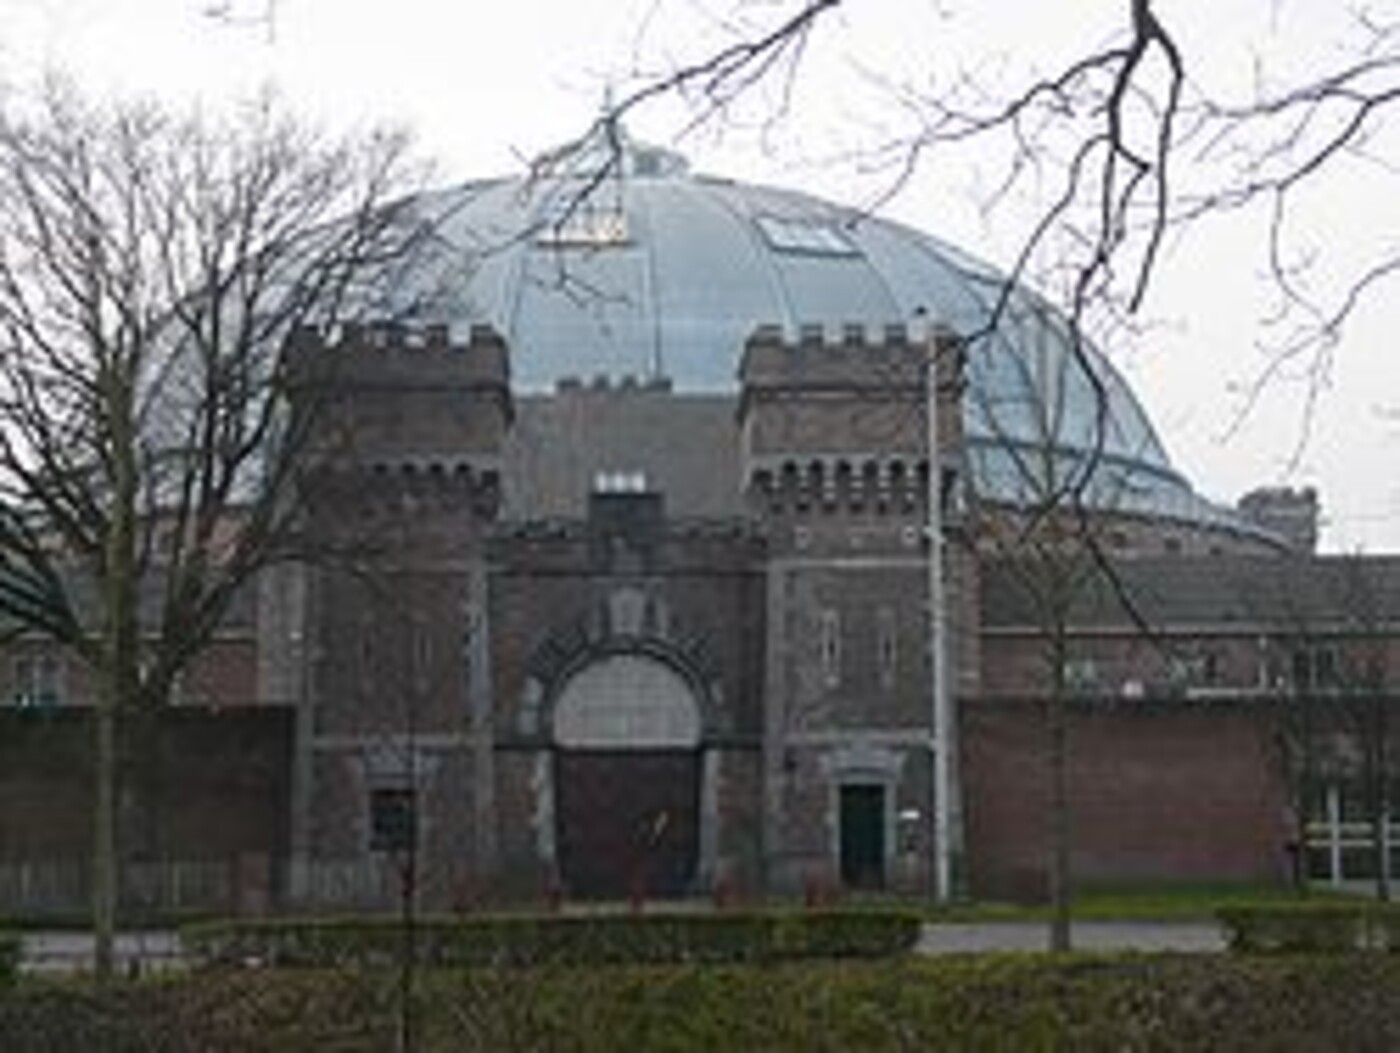 Koepelgevangenis Breda dl.2